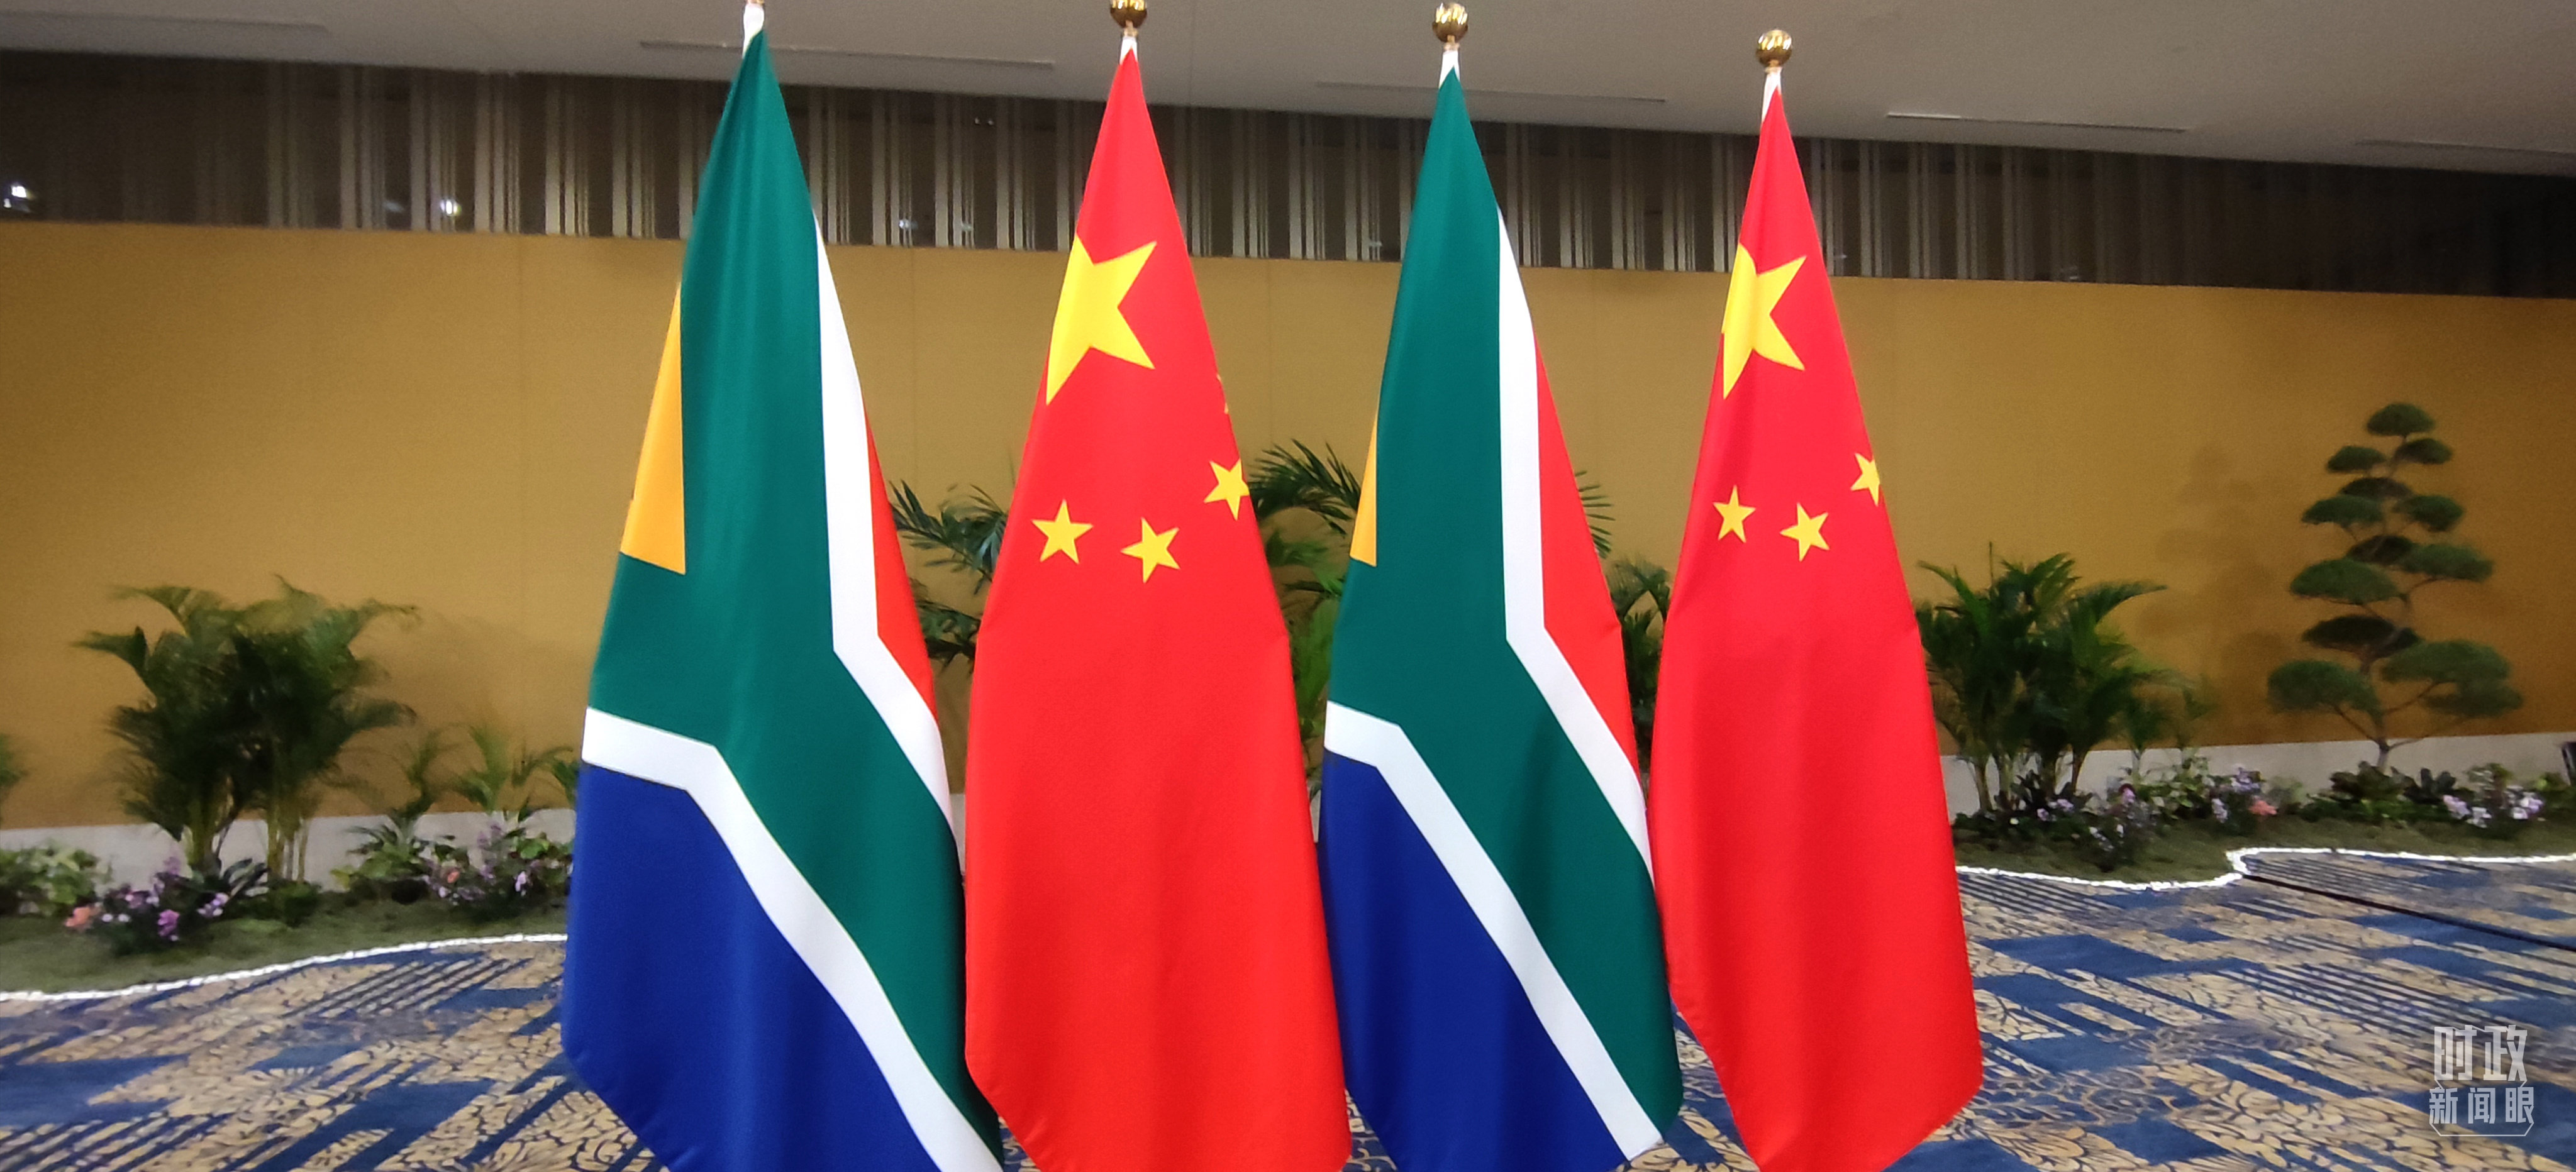 △会见现场的中国和南非两国国旗。（总台央视记者耿小龙拍摄）